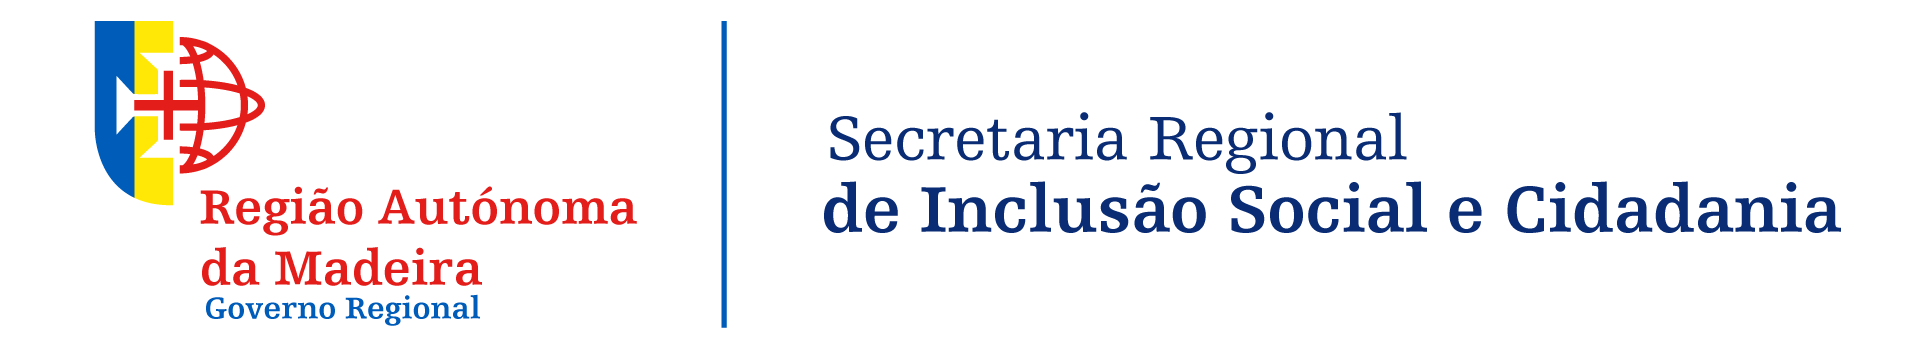 Secretaria Regional de Inclusão Social e Cidadania